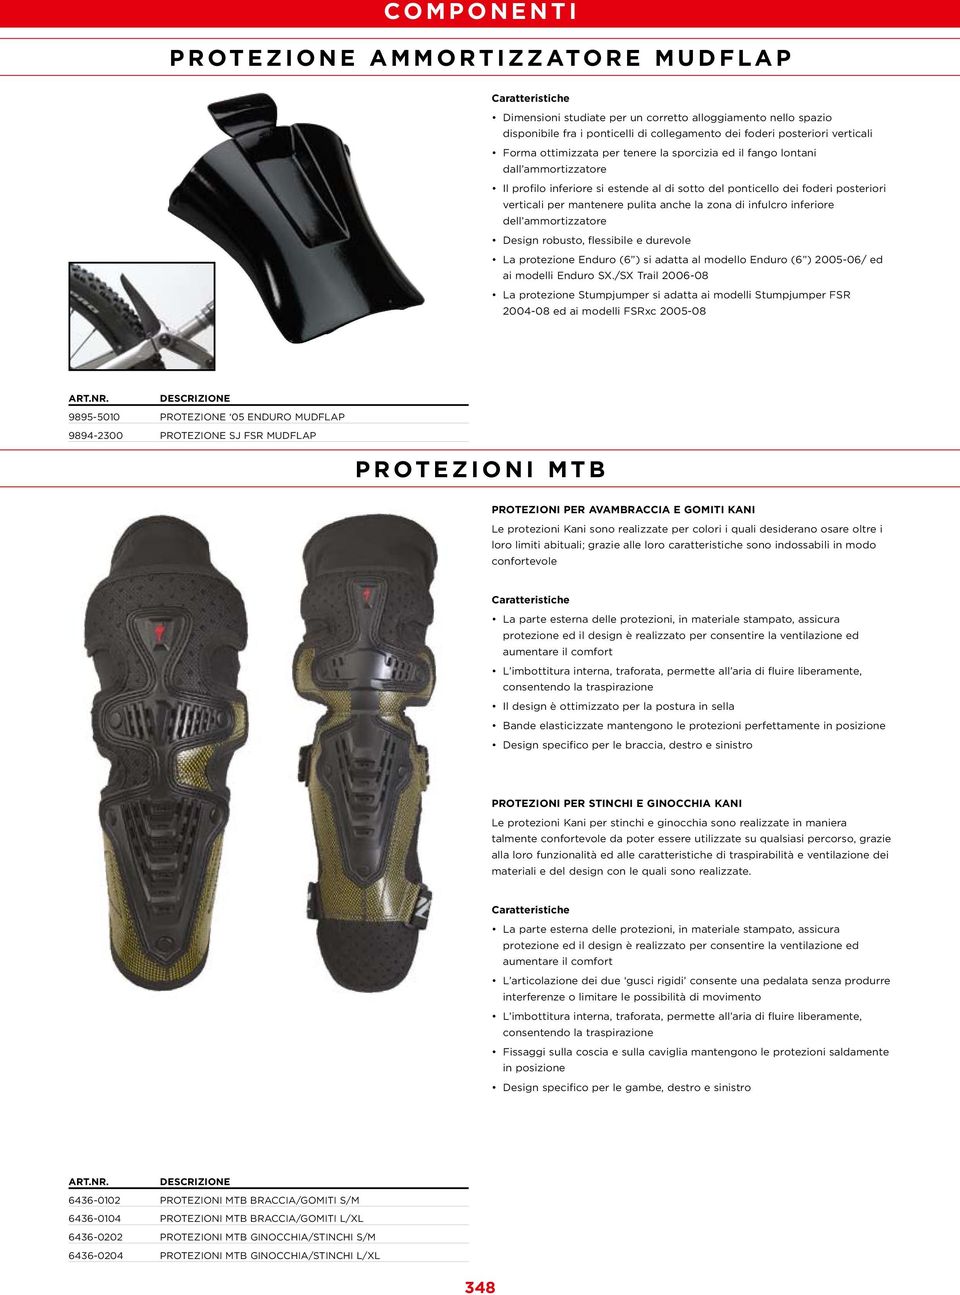 inferiore dell ammortizzatore Design robusto, flessibile e durevole La protezione Enduro (6 ) si adatta al modello Enduro (6 ) 2005-06/ ed ai modelli Enduro SX.